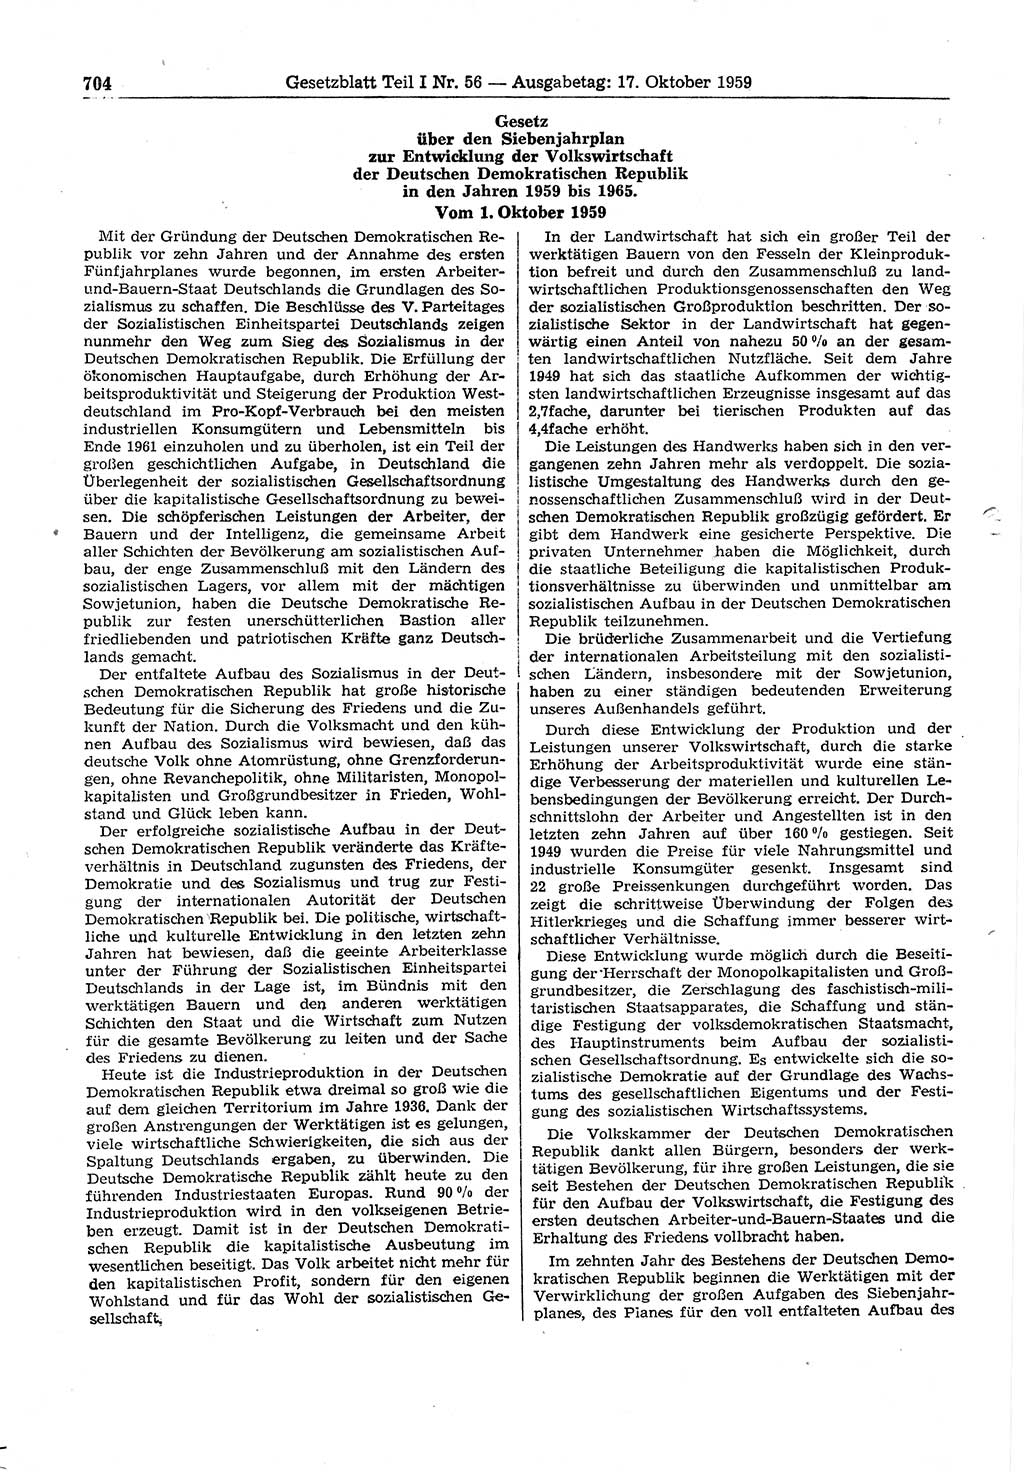 Gesetzblatt (GBl.) der Deutschen Demokratischen Republik (DDR) Teil Ⅰ 1959, Seite 704 (GBl. DDR Ⅰ 1959, S. 704)